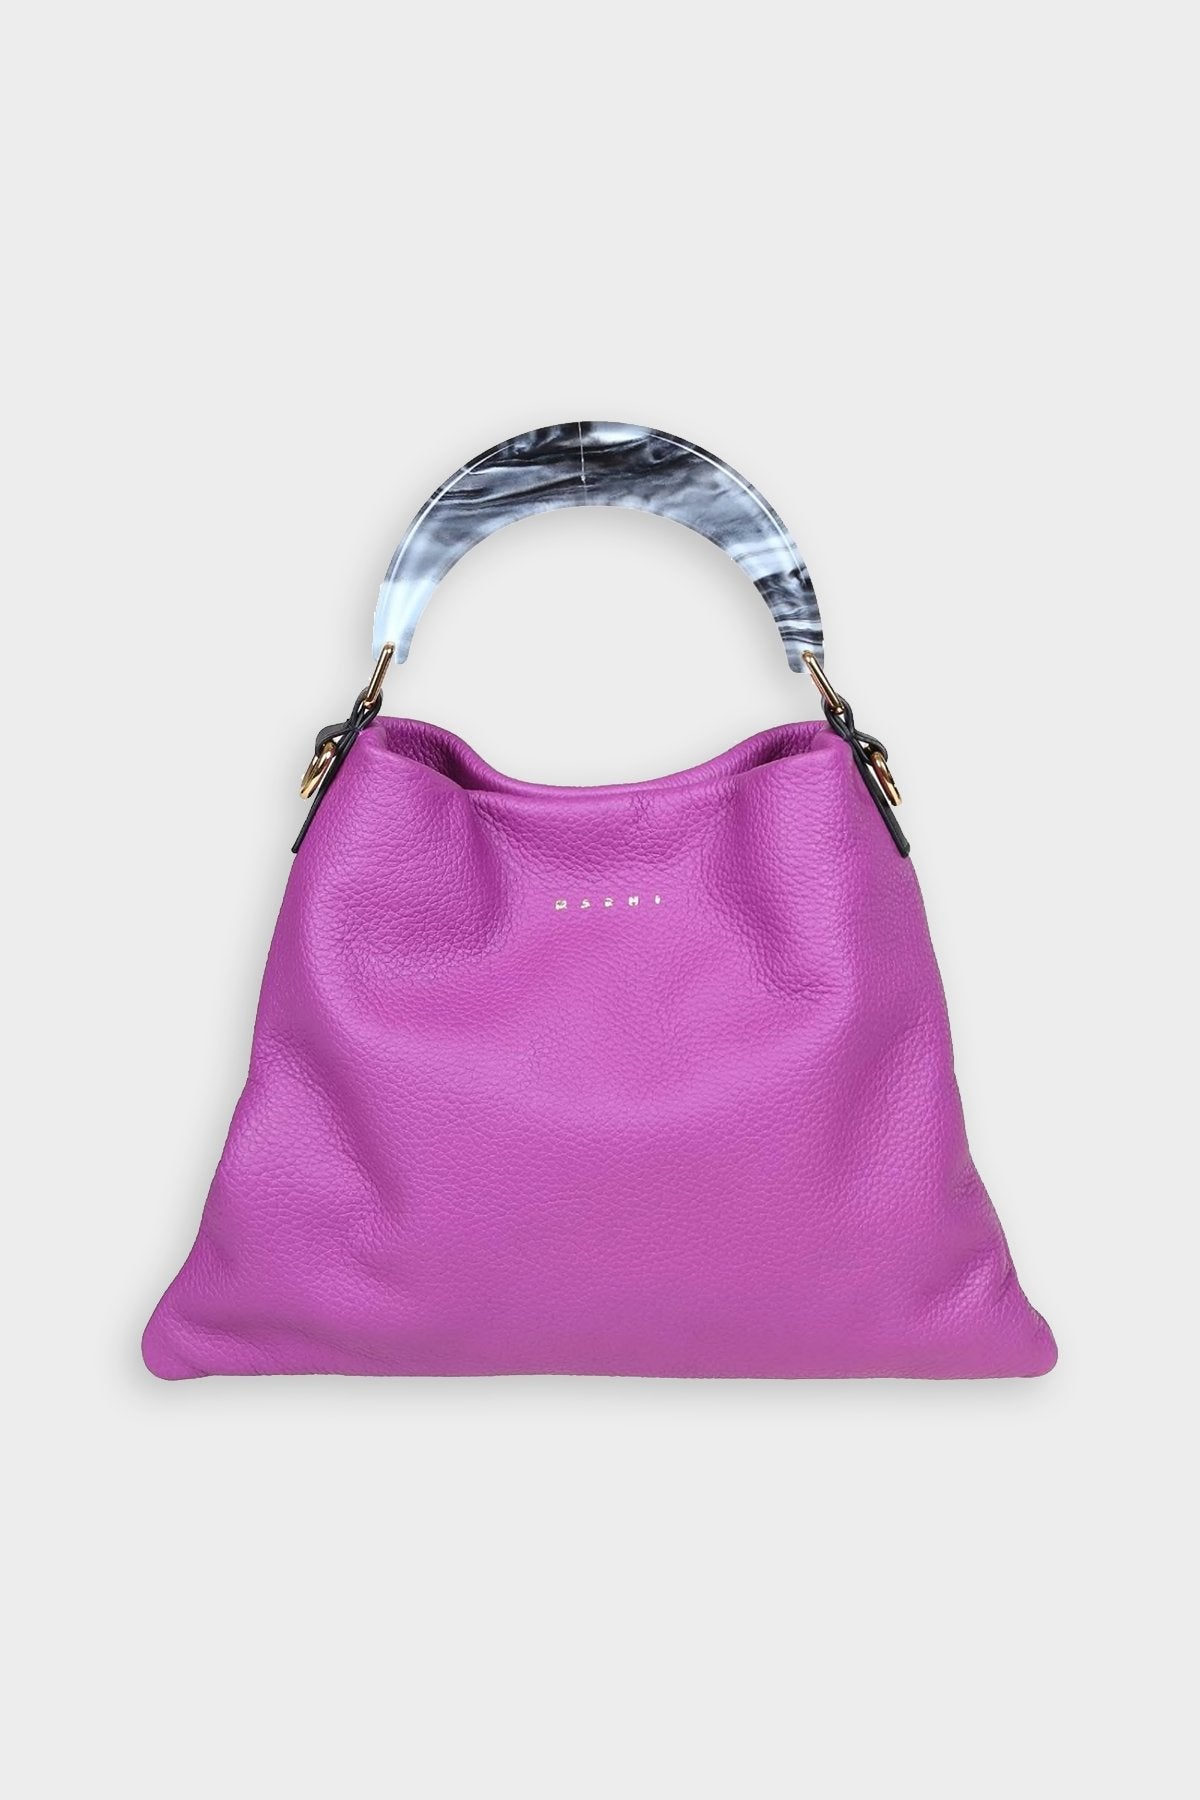 Hobo Calfskin Small Shoulder Bag in Purple - shop-olivia.com